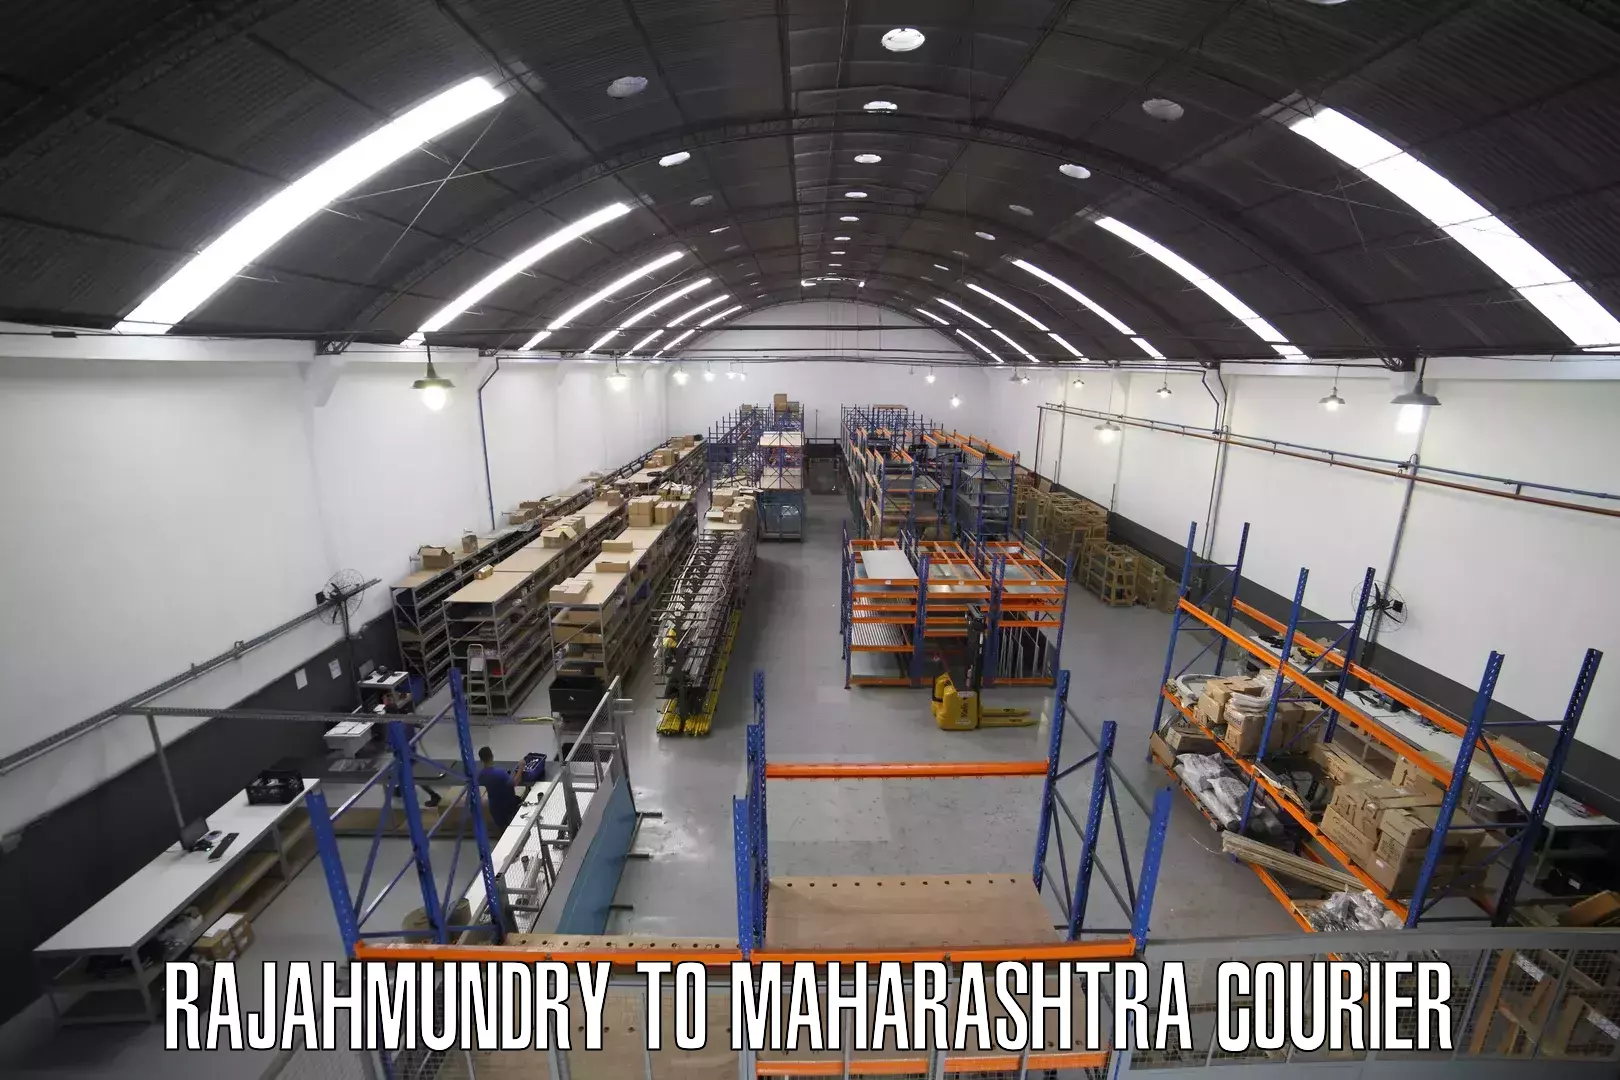 Expedited shipping methods Rajahmundry to Solapur